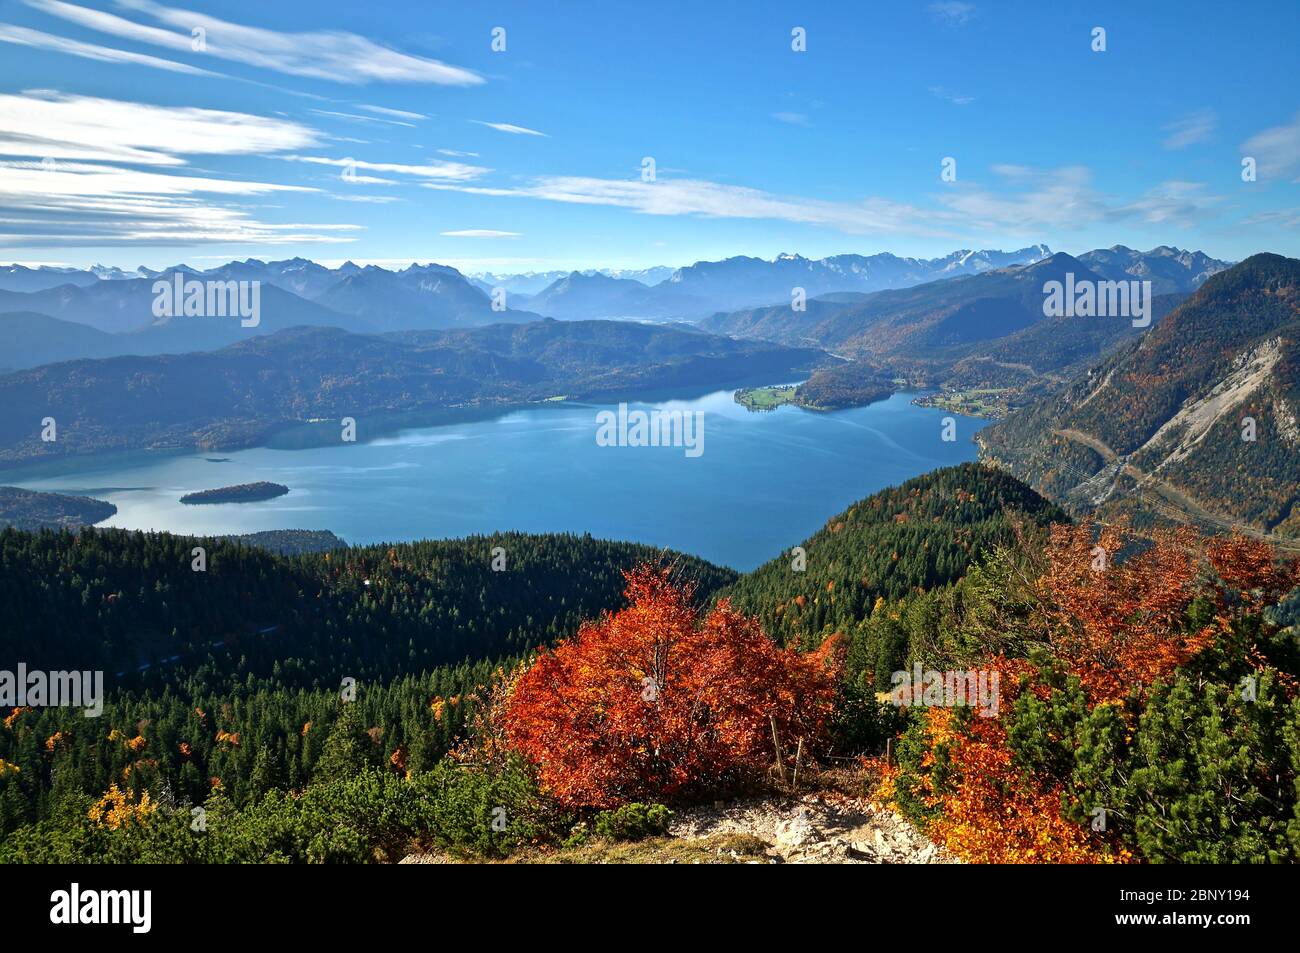 Panoramablick mit buntem Herbstwald der schönen bayerischen alpen und Walchensee vom Jochberg aus gesehen Stockfoto